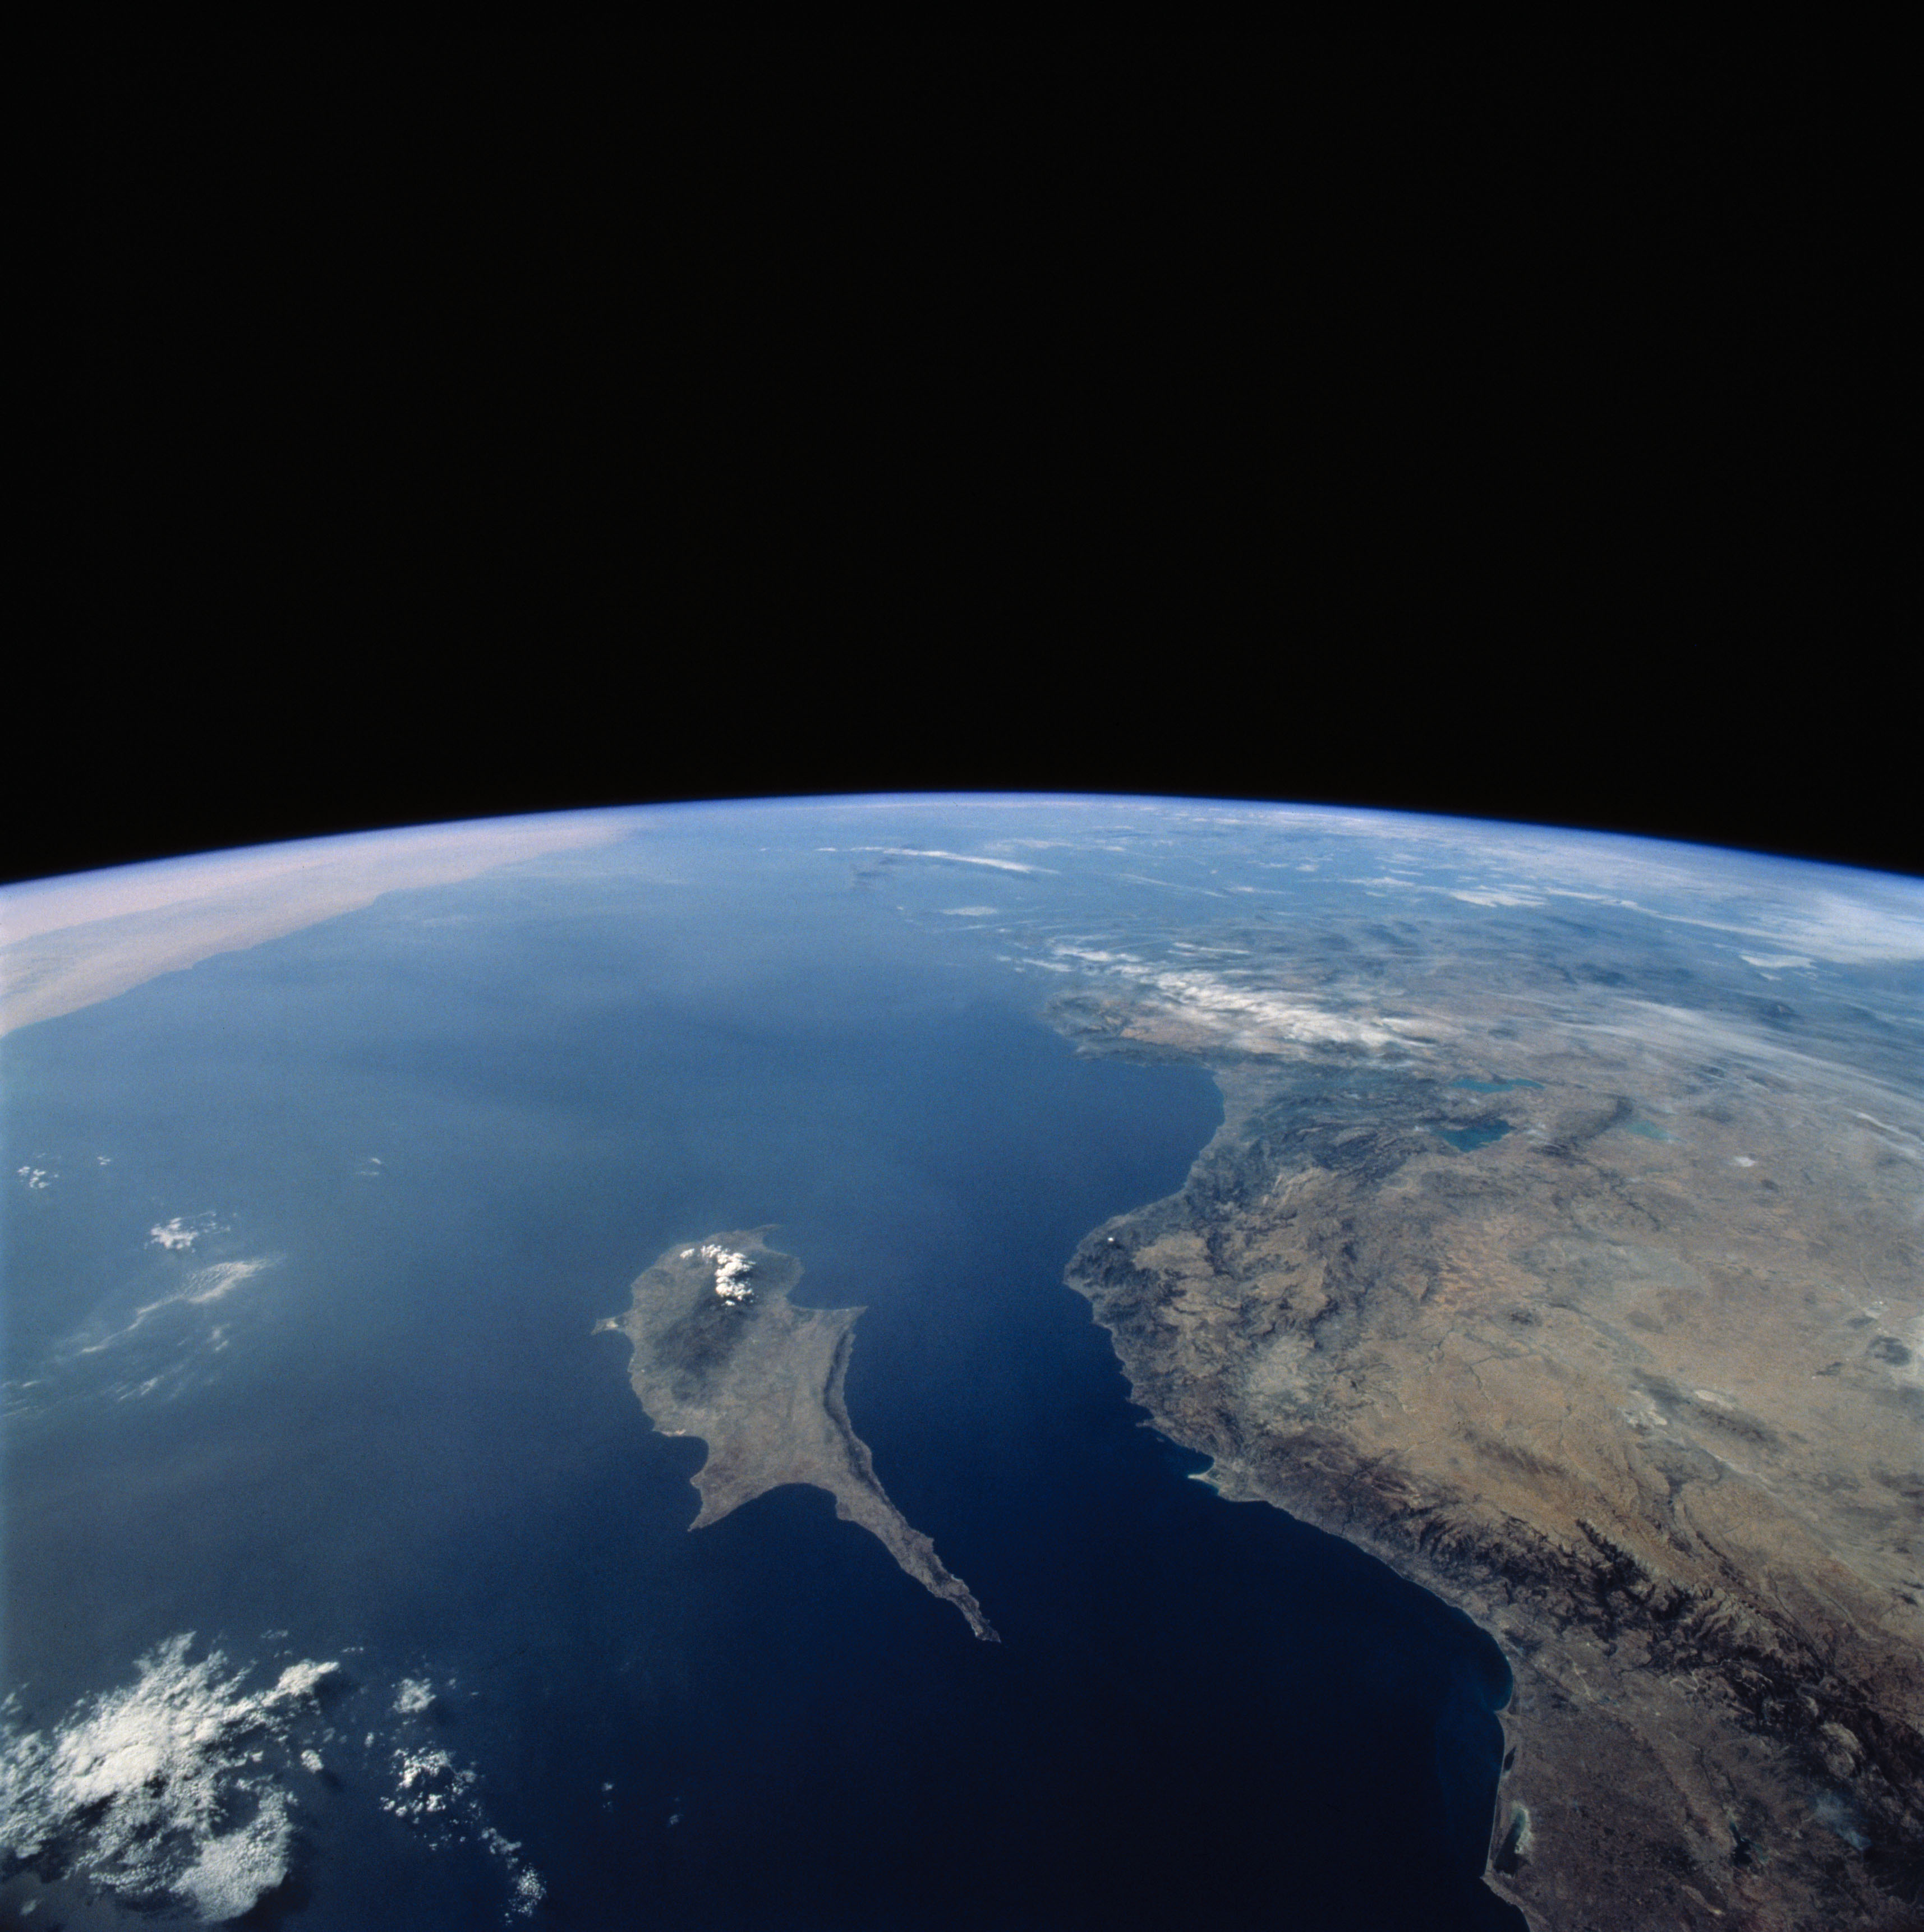 Fotografias de observação da Terra tiradas pela tripulação da STS-58.  Chipre, Türkiye e o Mar Mediterrâneo oriental.